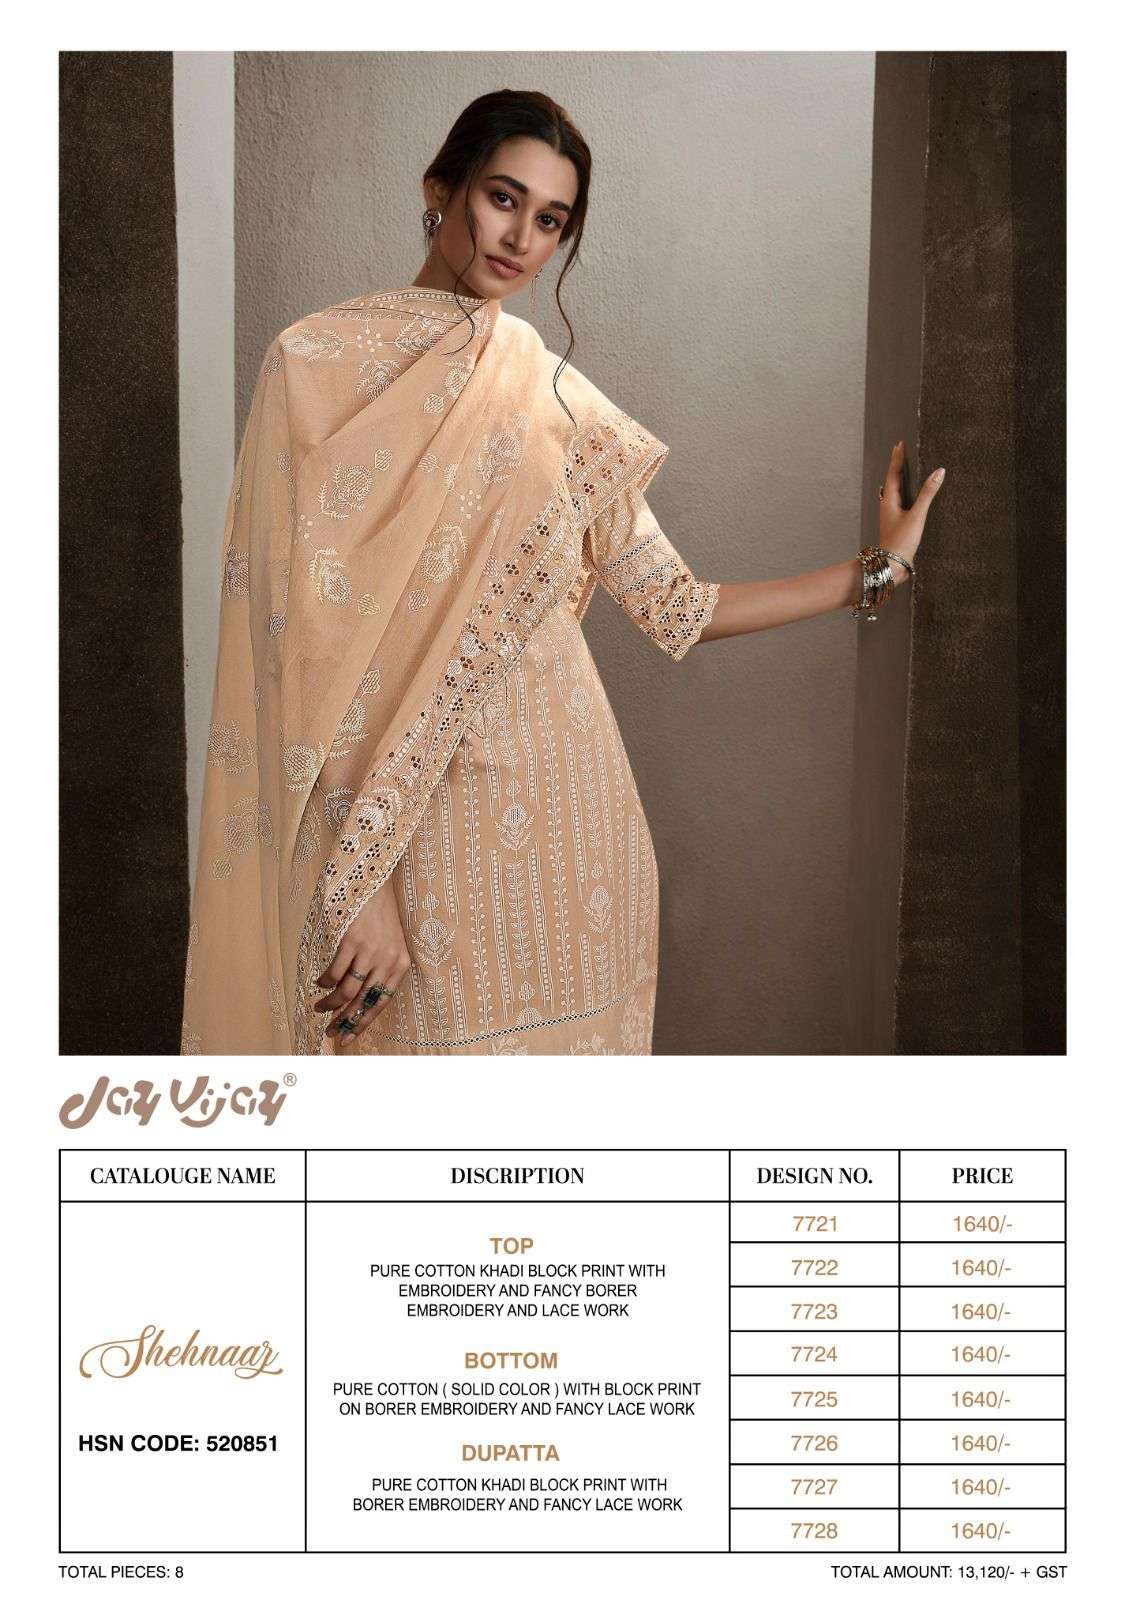 jayvijay shehnaaz vol-2 8241-8248 series indian designer salwar kameez catalogue wholesale price surat 